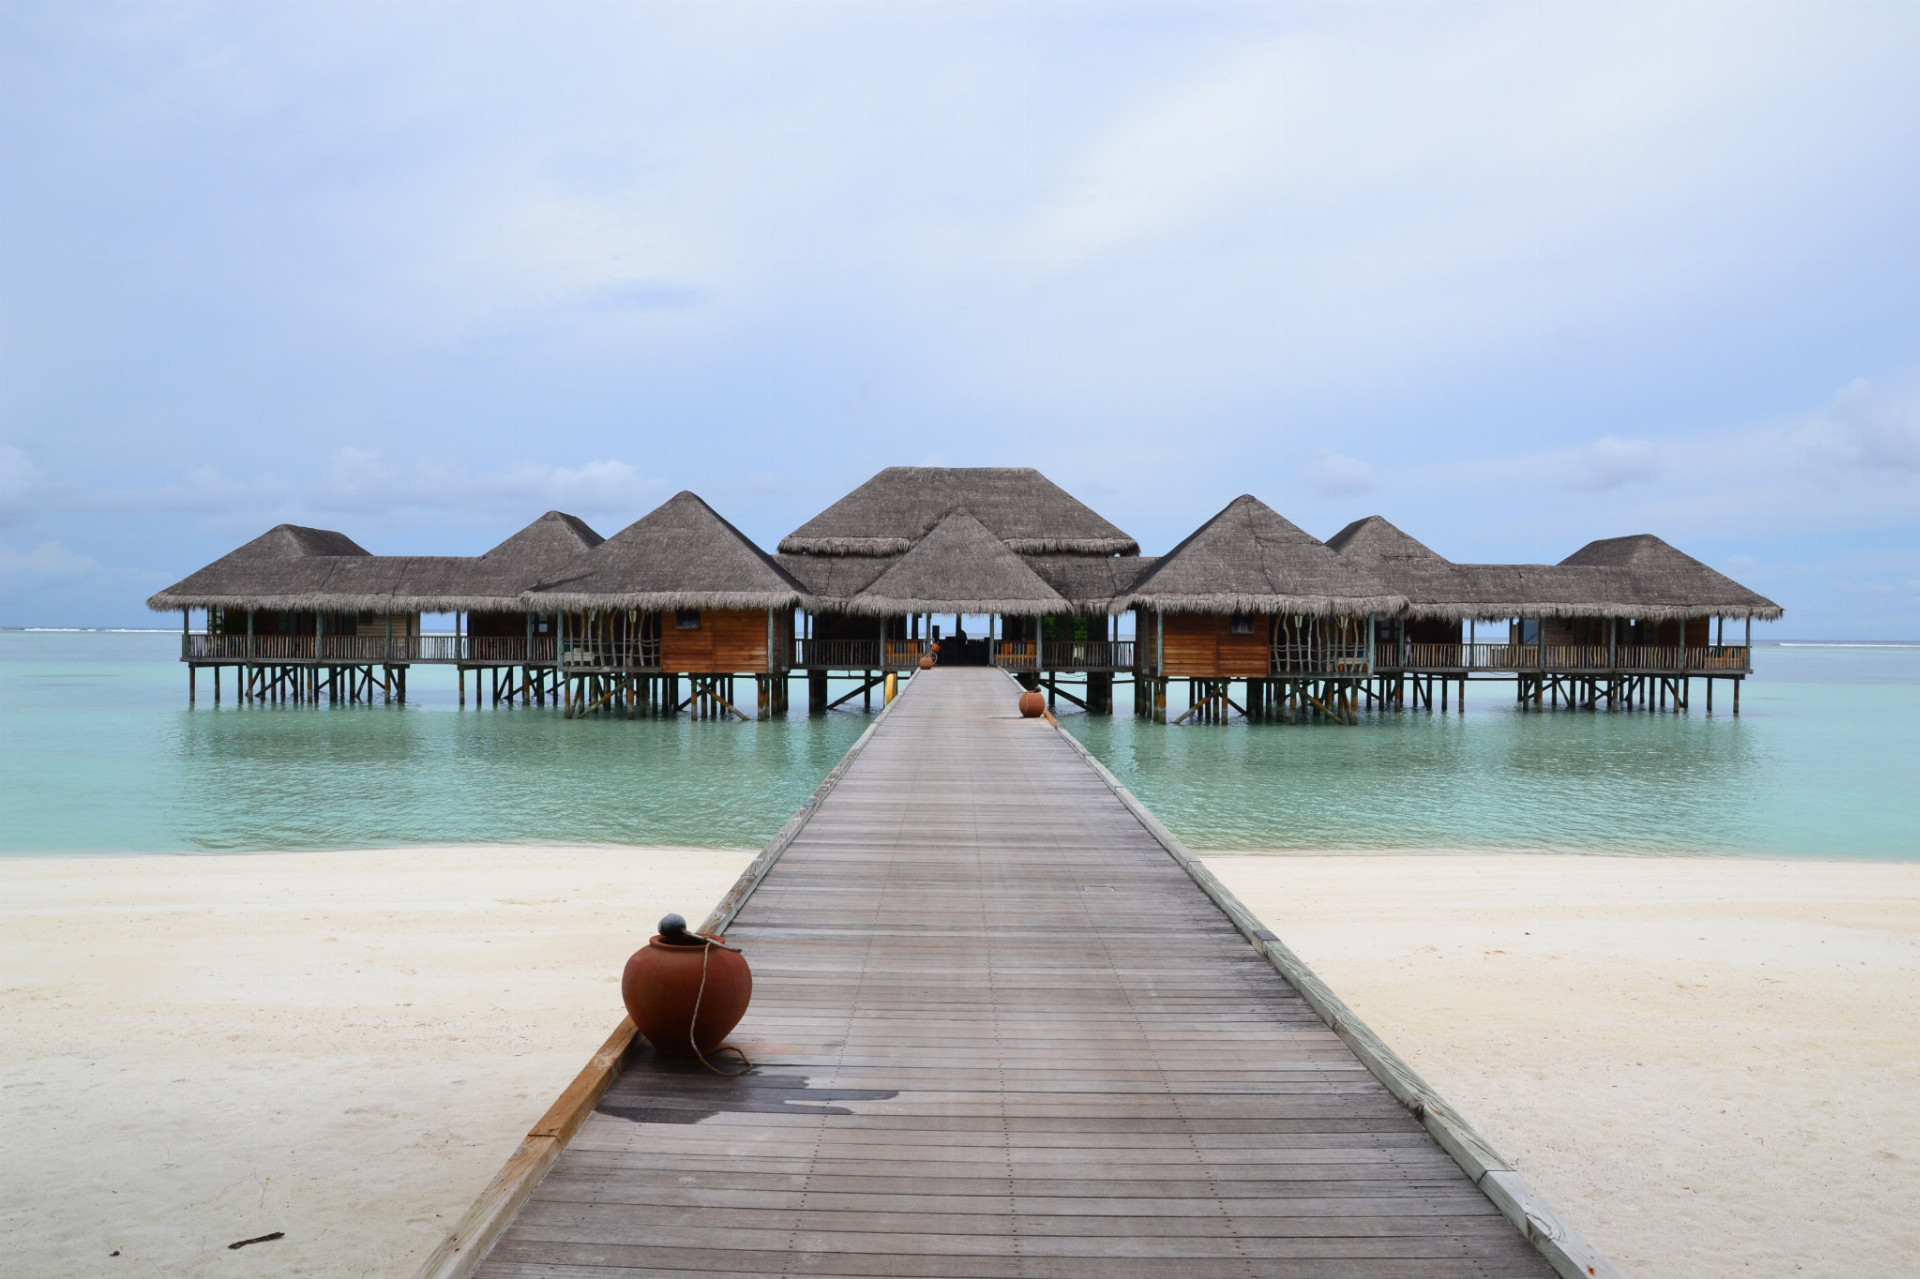 Hotel postavili pomocou ekologických materiálov, má intímnu atmosféru a hostia sa tu cítia ako doma. Čo sa týka ostrovov Maldivy, patrí tento rezort k najlepším a najluxusnejším. 